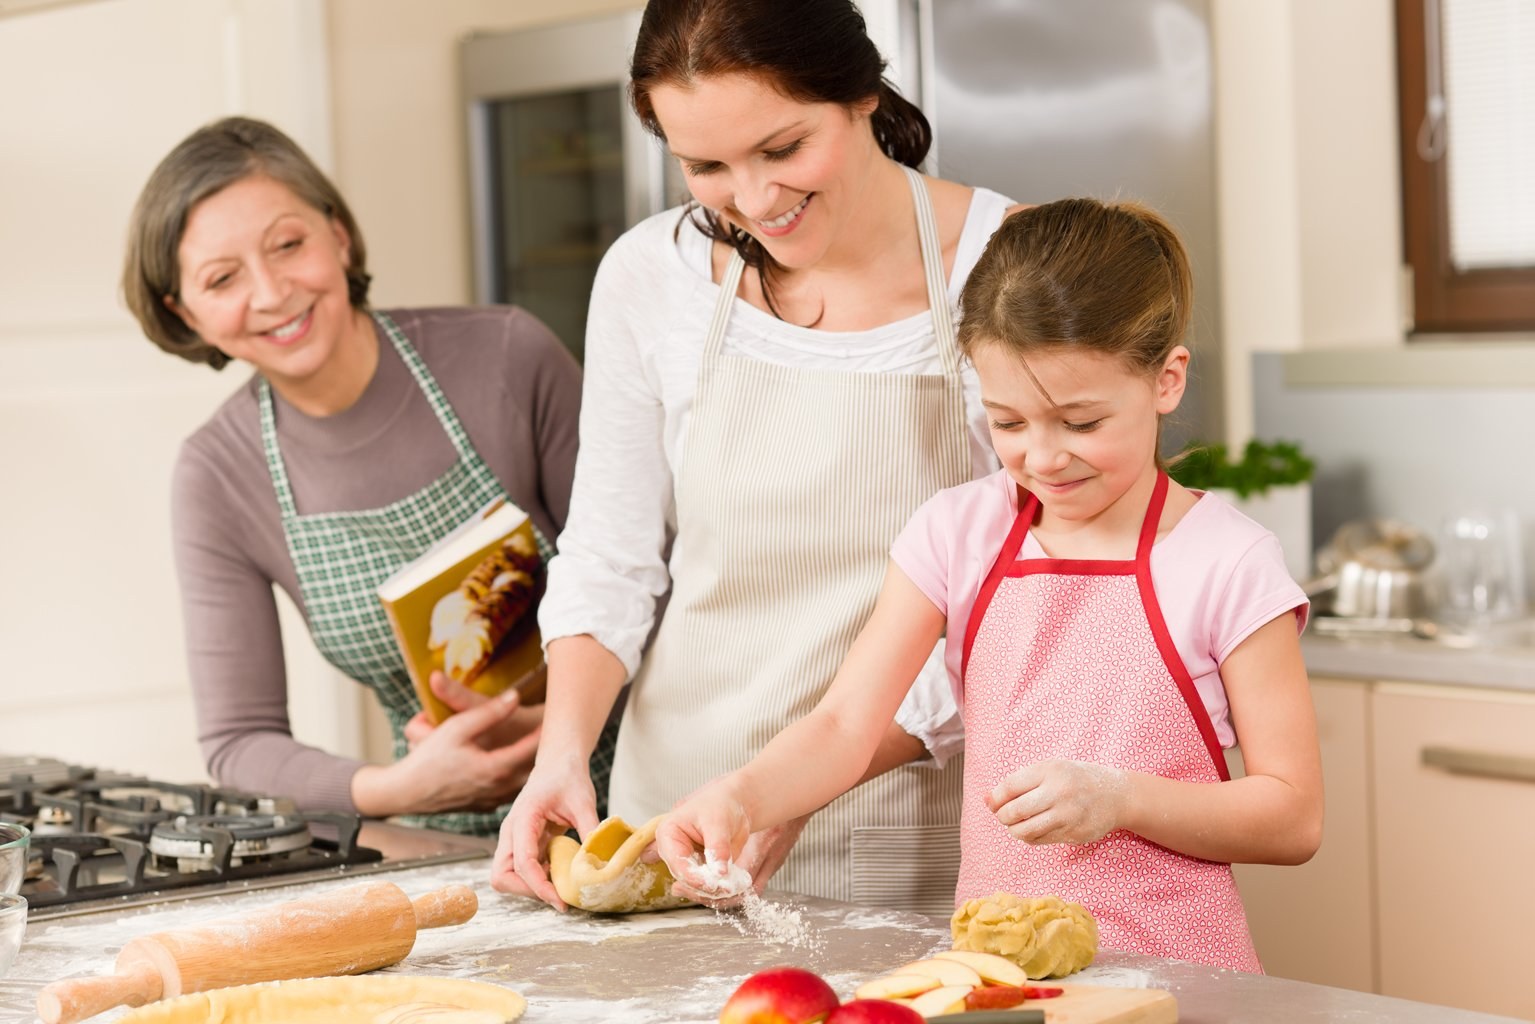 Готовить еду пирог. Кухня для детей. Семья на кухне. Готовка с детьми на кухне. Дети готовят с родителями.